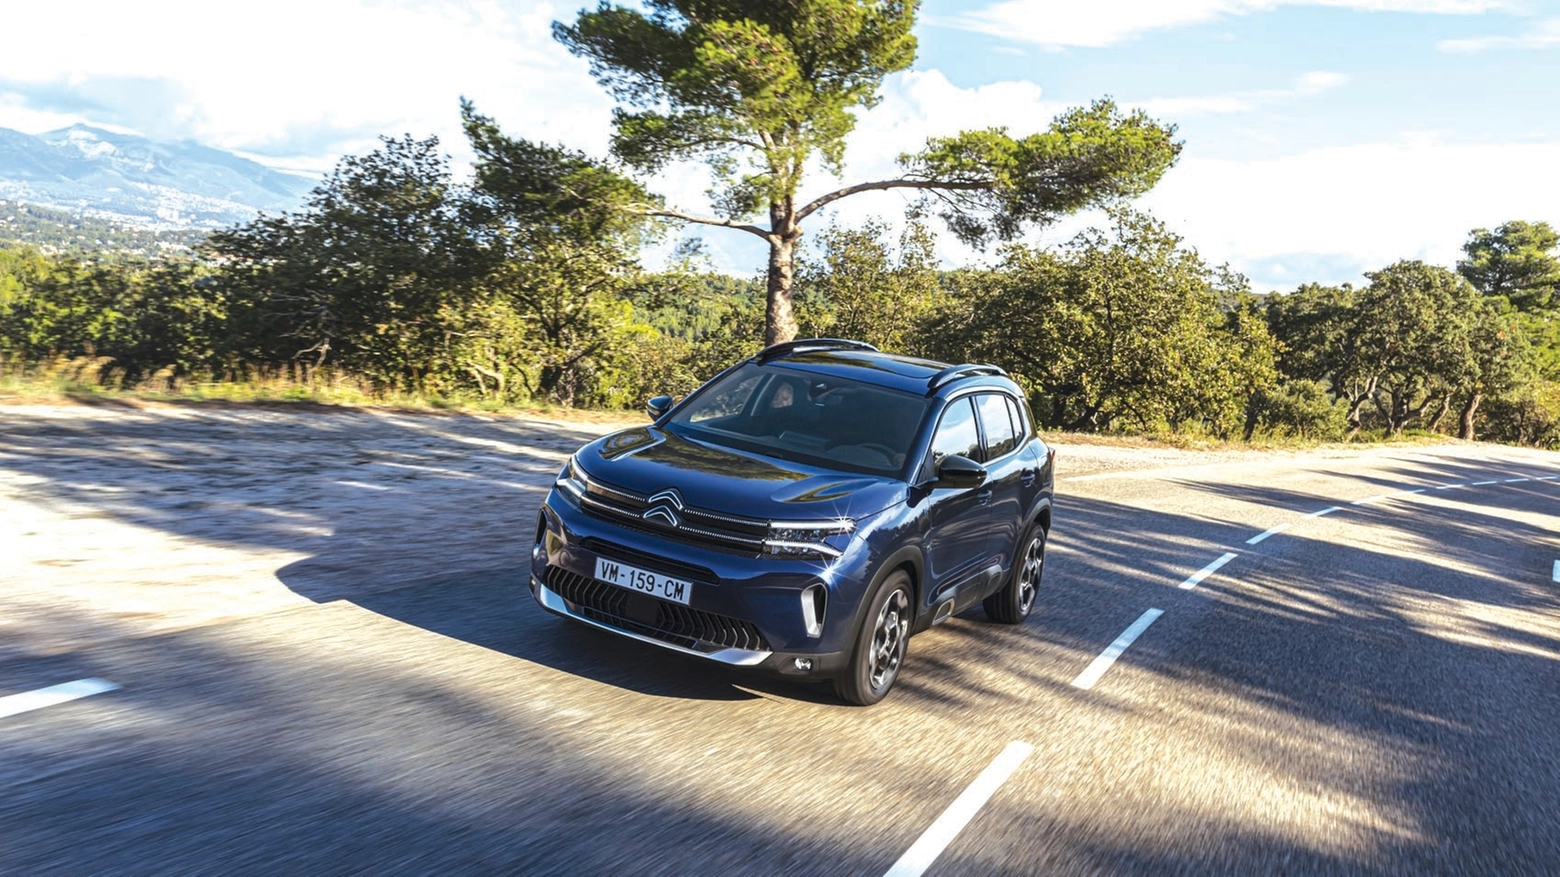 Utilitaria / Citroën rinnova il modello in quattro versioni pronte a soddisfare qualsiasi esigenza